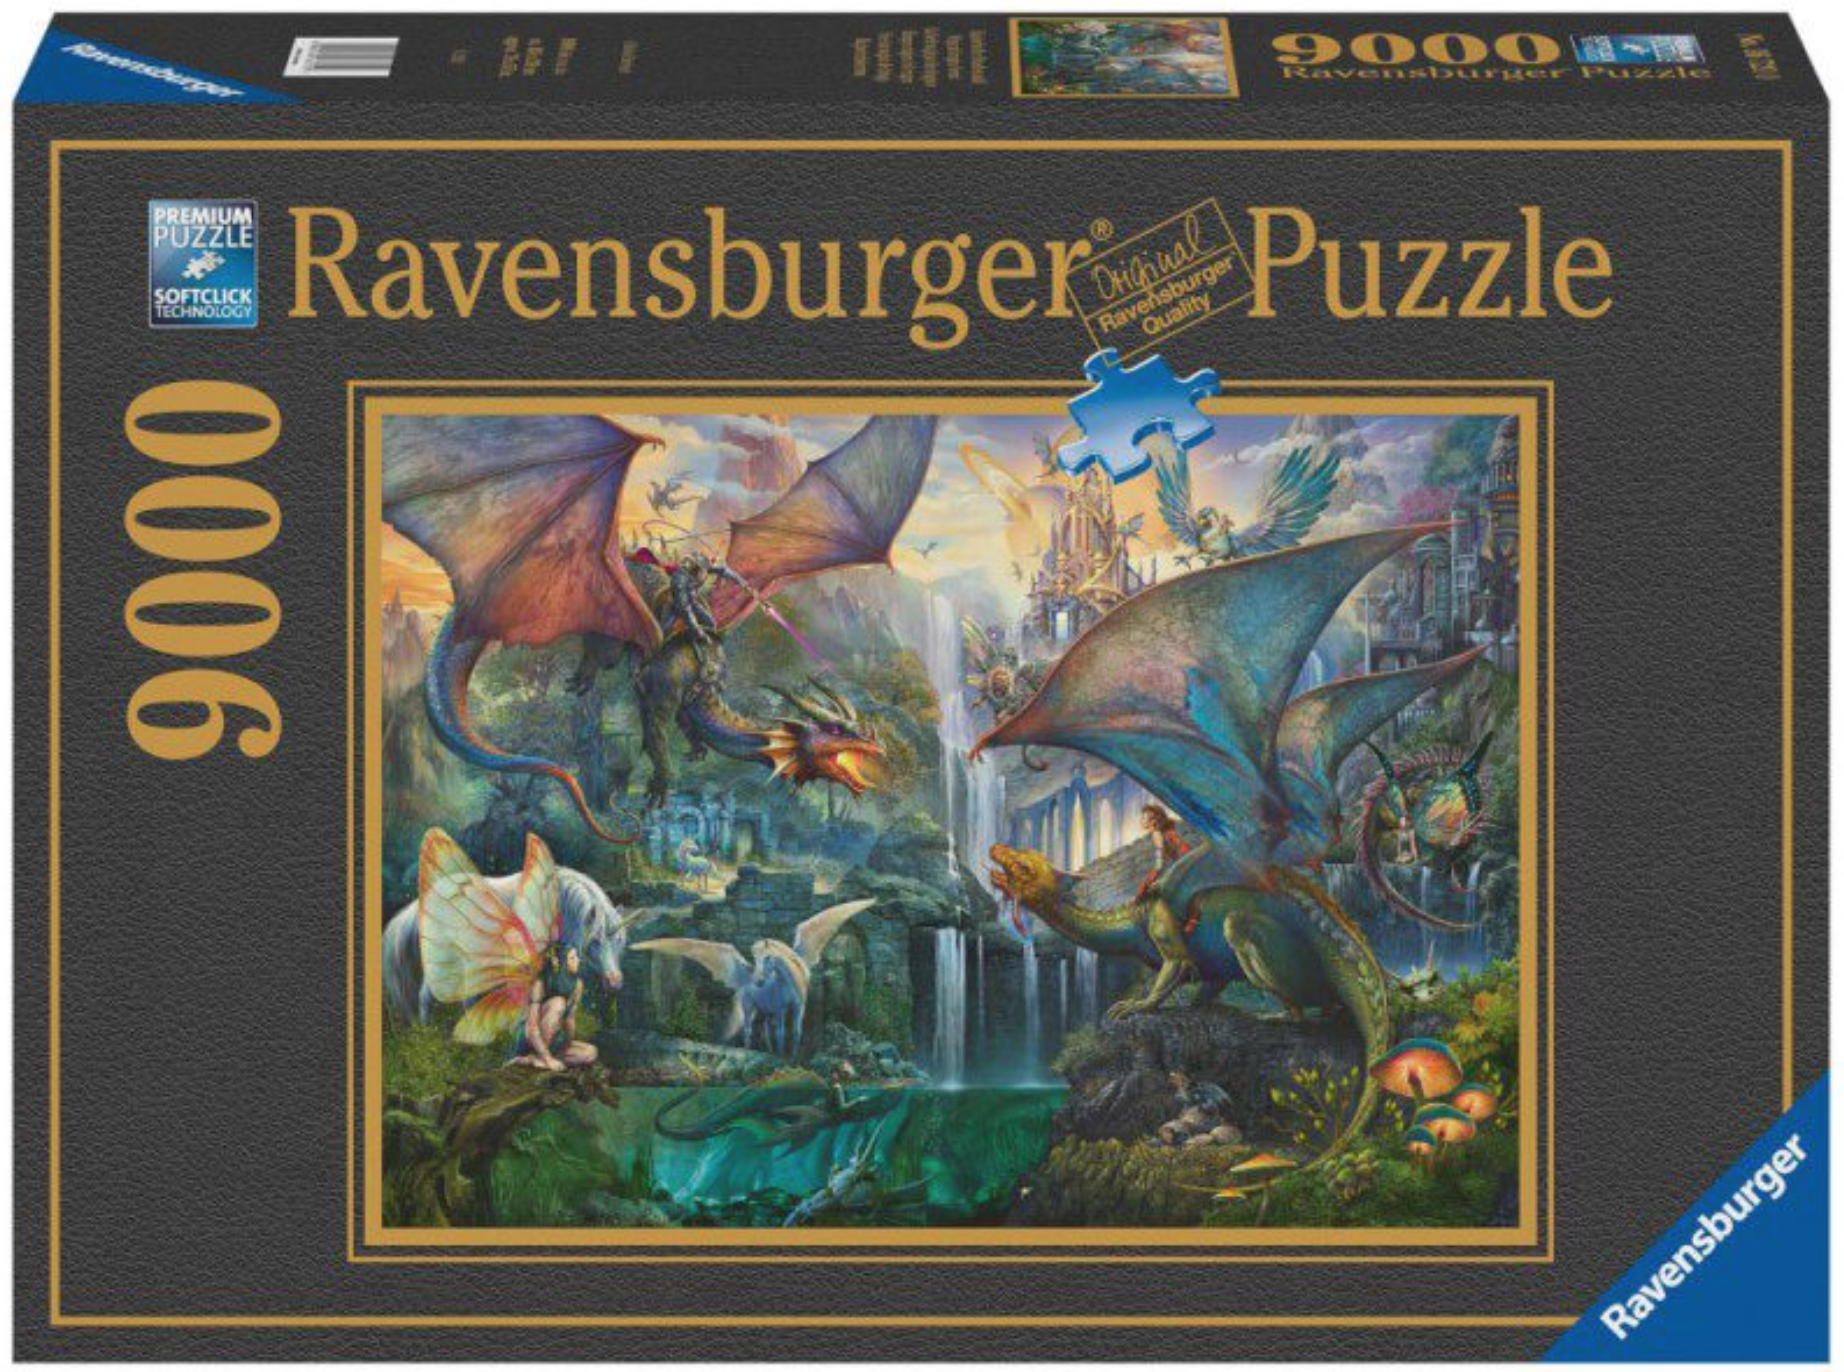 Building the 9000 Piece Ravensburger Disney Museum Puzzle! 